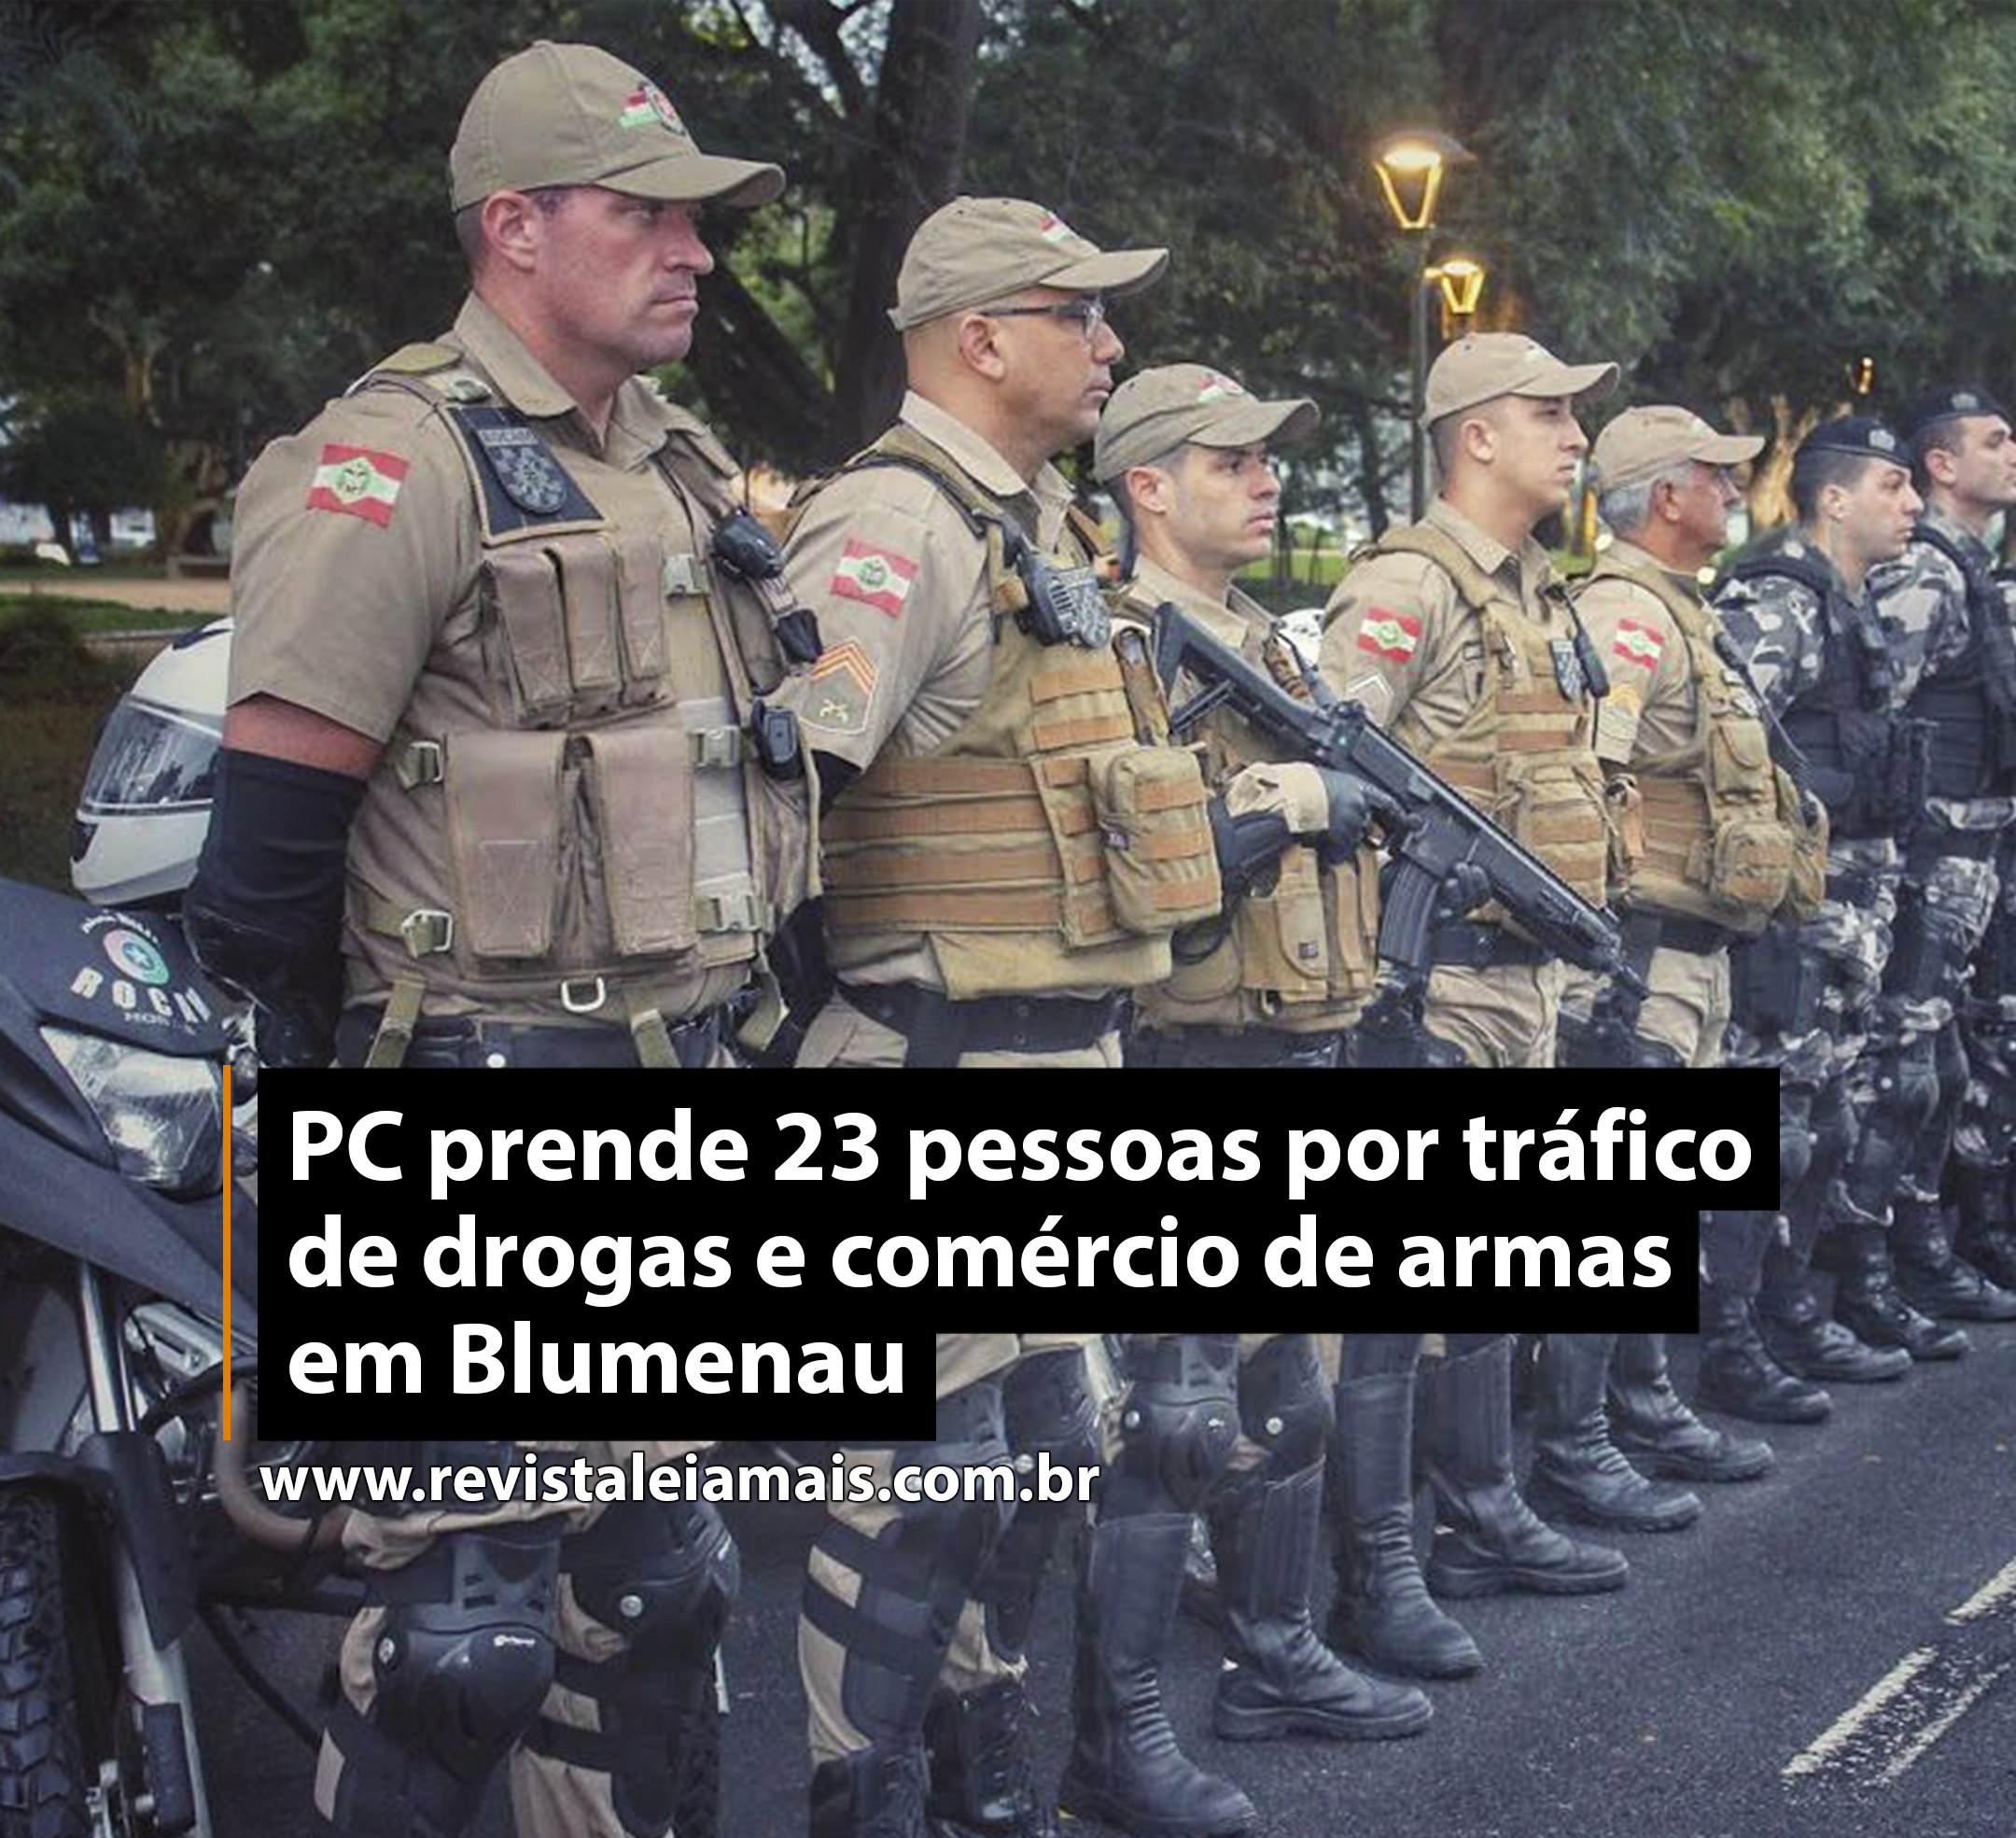 PC prende 23 pessoas por tráfico de drogas e comércio de armas em Blumenau